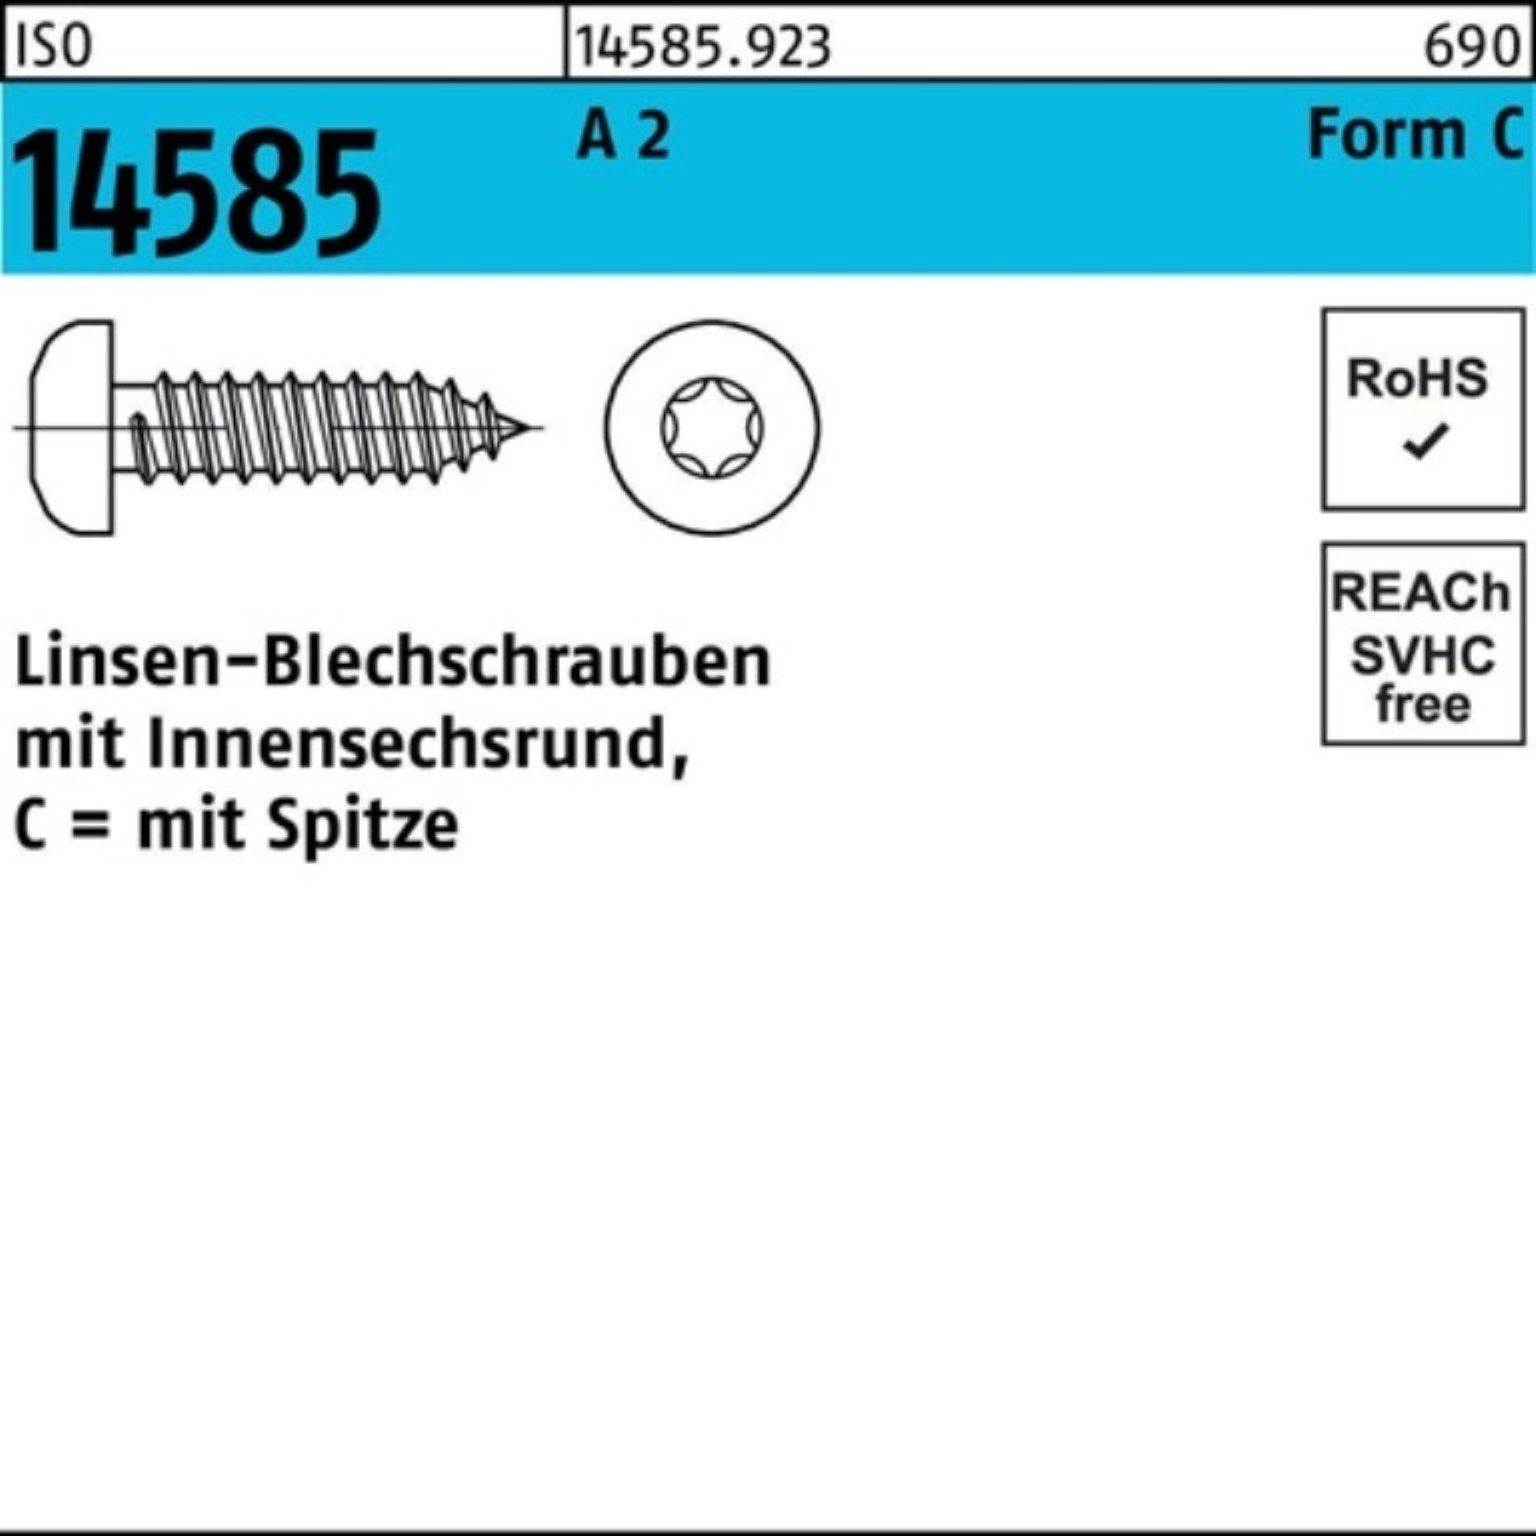 A Reyher Pack 1000 2,9x 14585 Blechschraube -C ISR T10 1000er ISO Linsenblechschraube 19 2